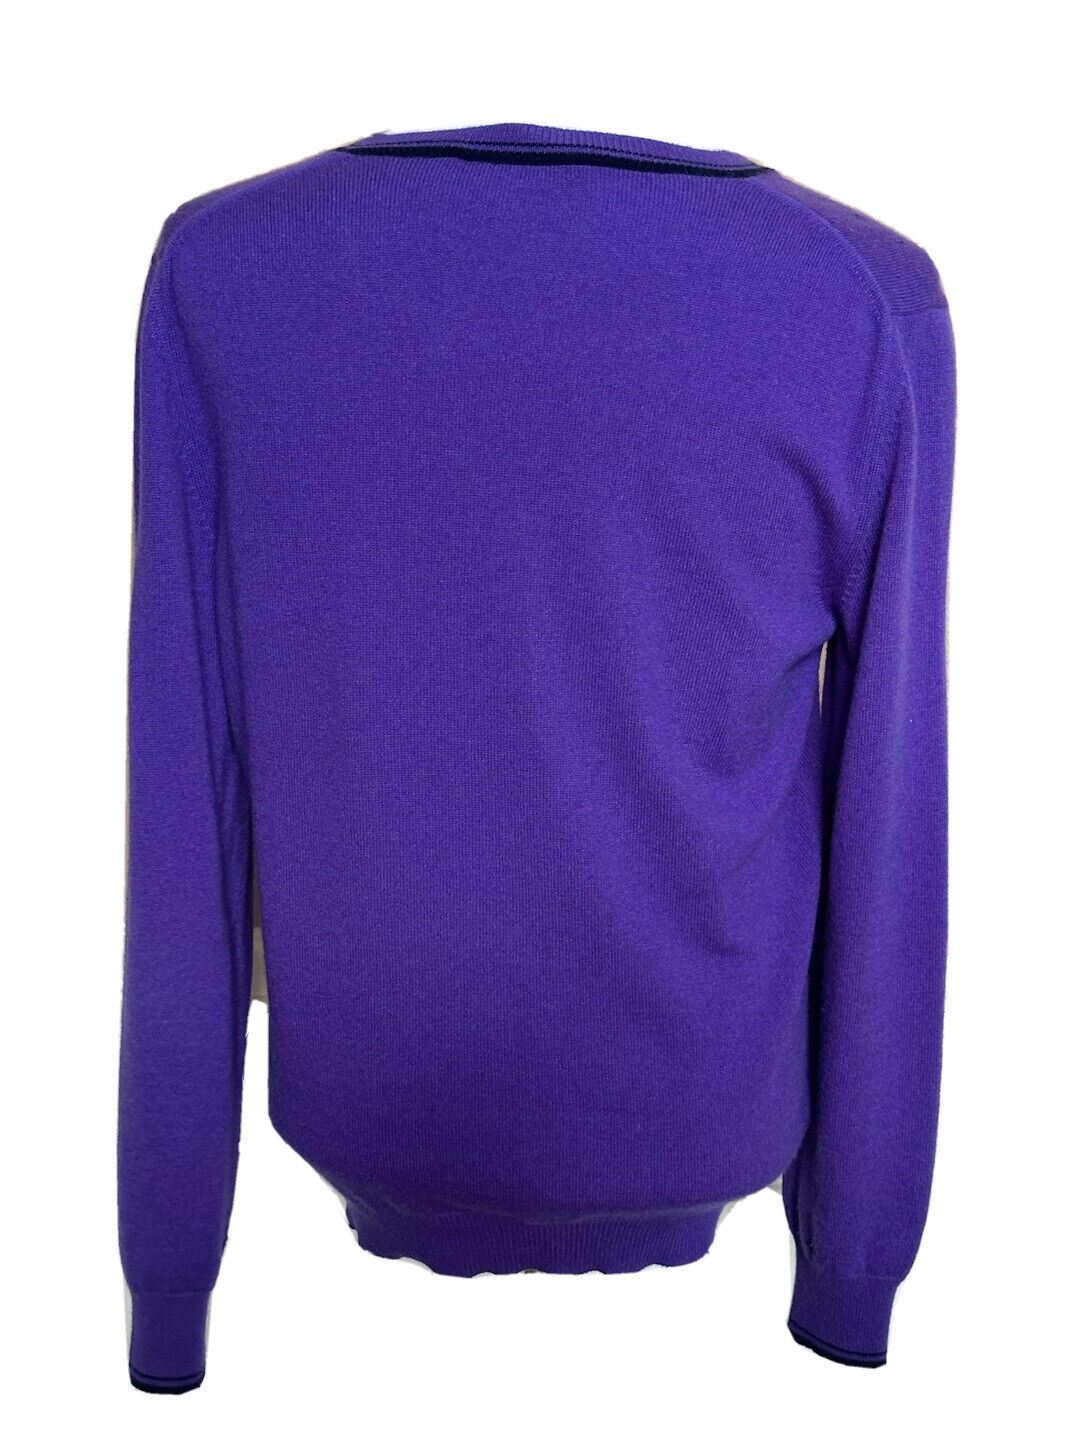 ETRO Herren-Pullover mit V-Ausschnitt, weich, lila, Größe M